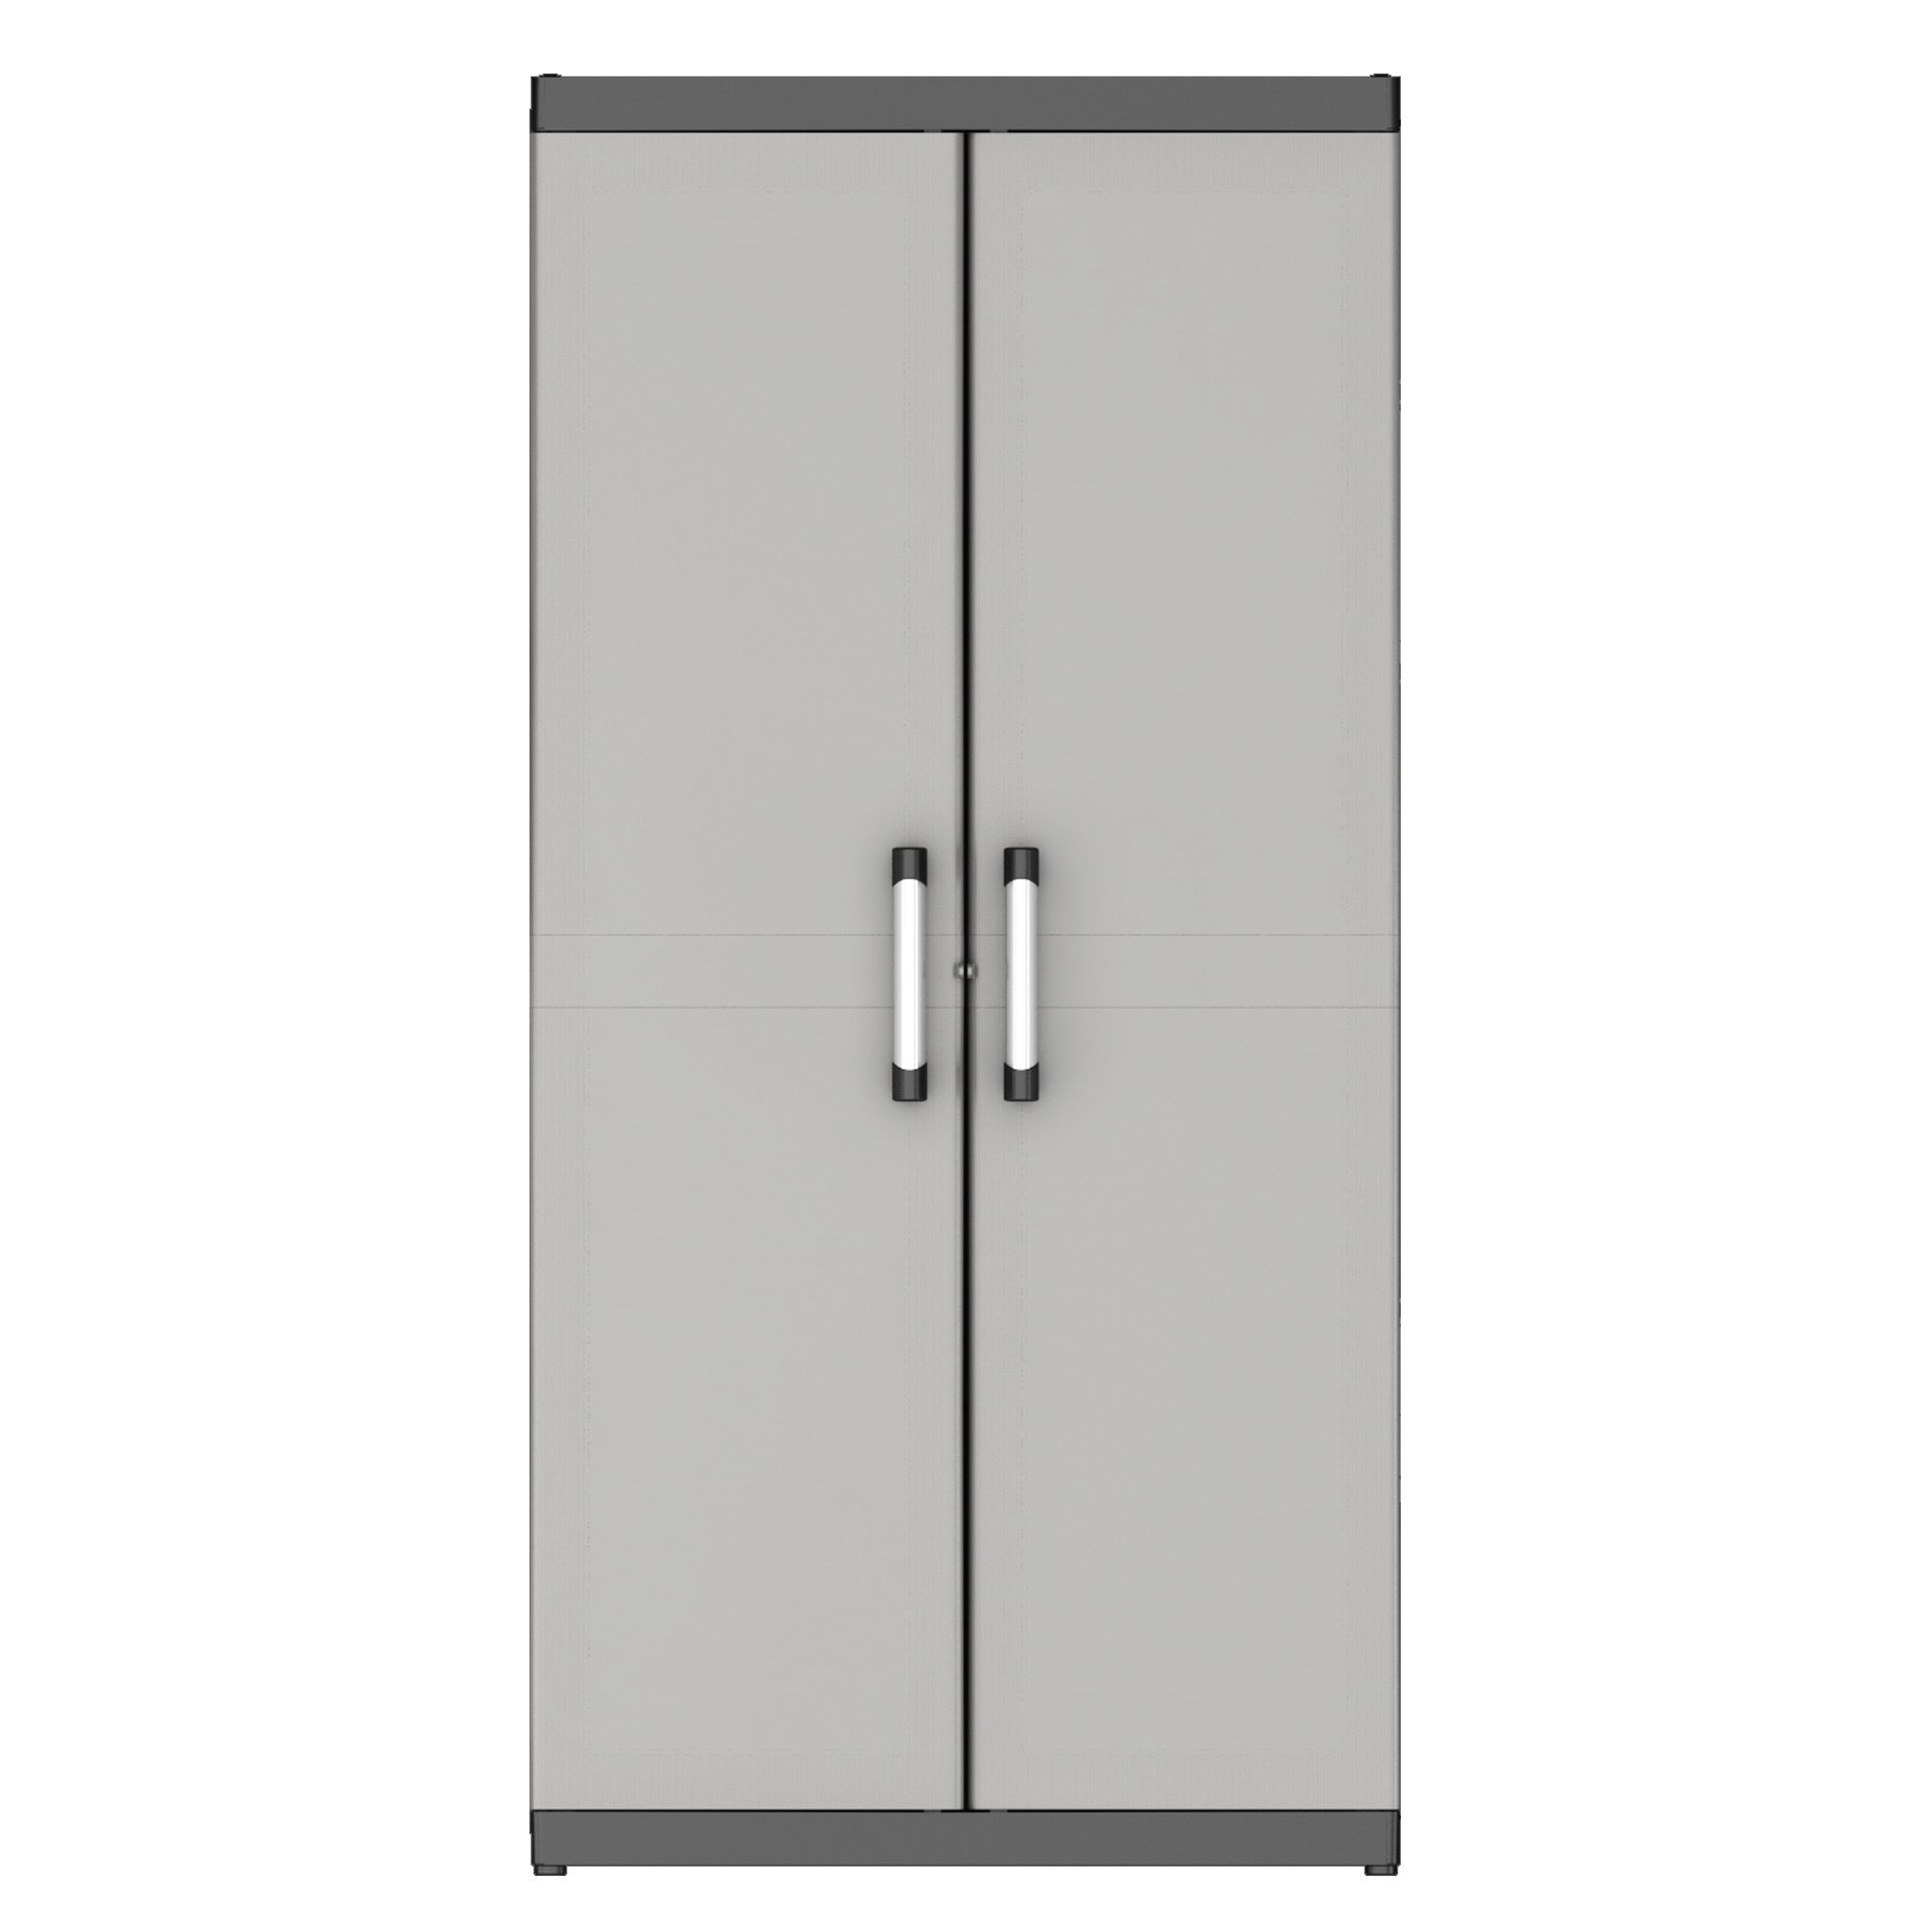 Form Links 4 shelf Black & grey XL tall Utility Storage cabinet